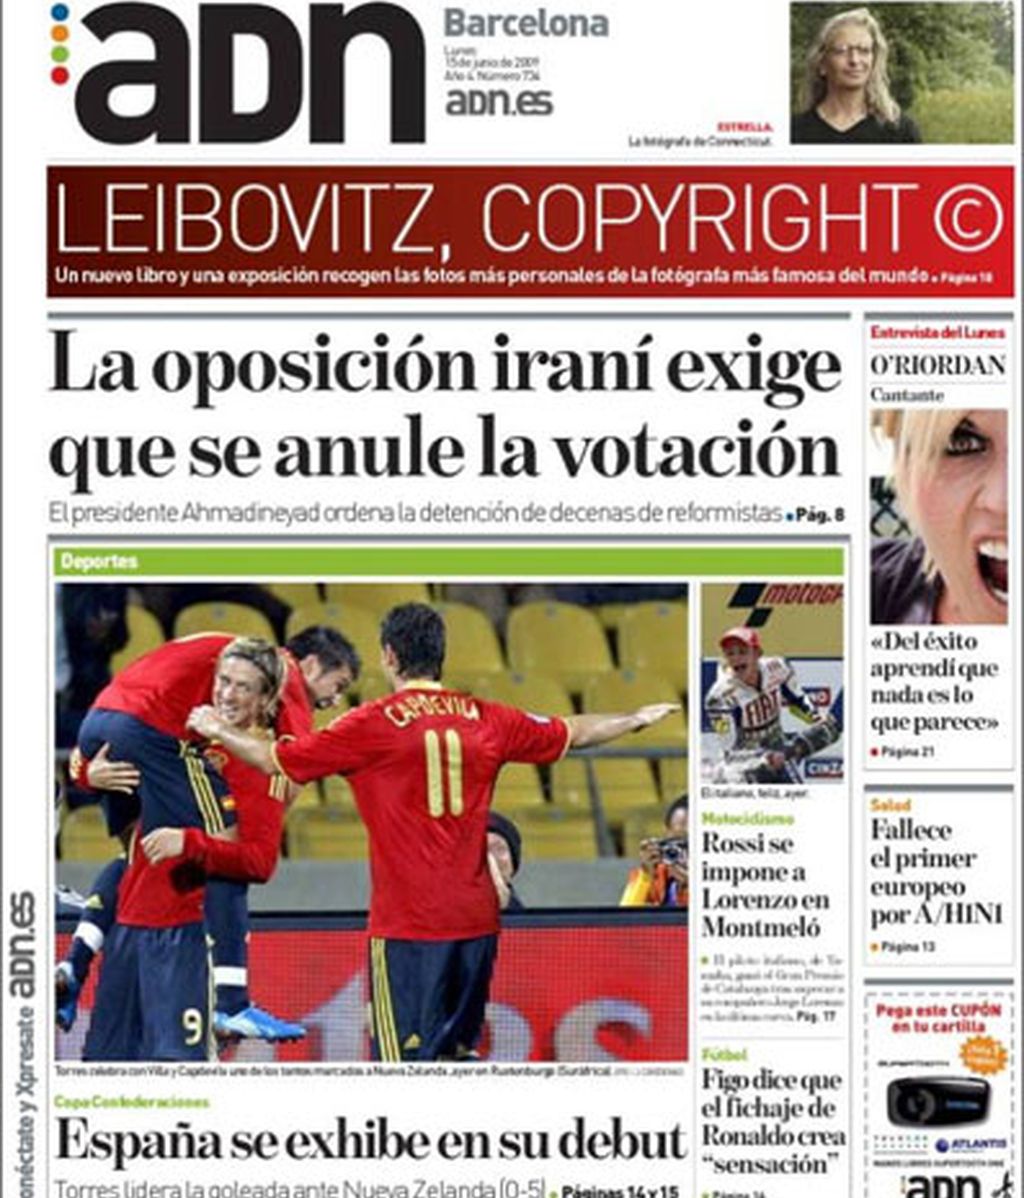 La prensa elogia el debut de España